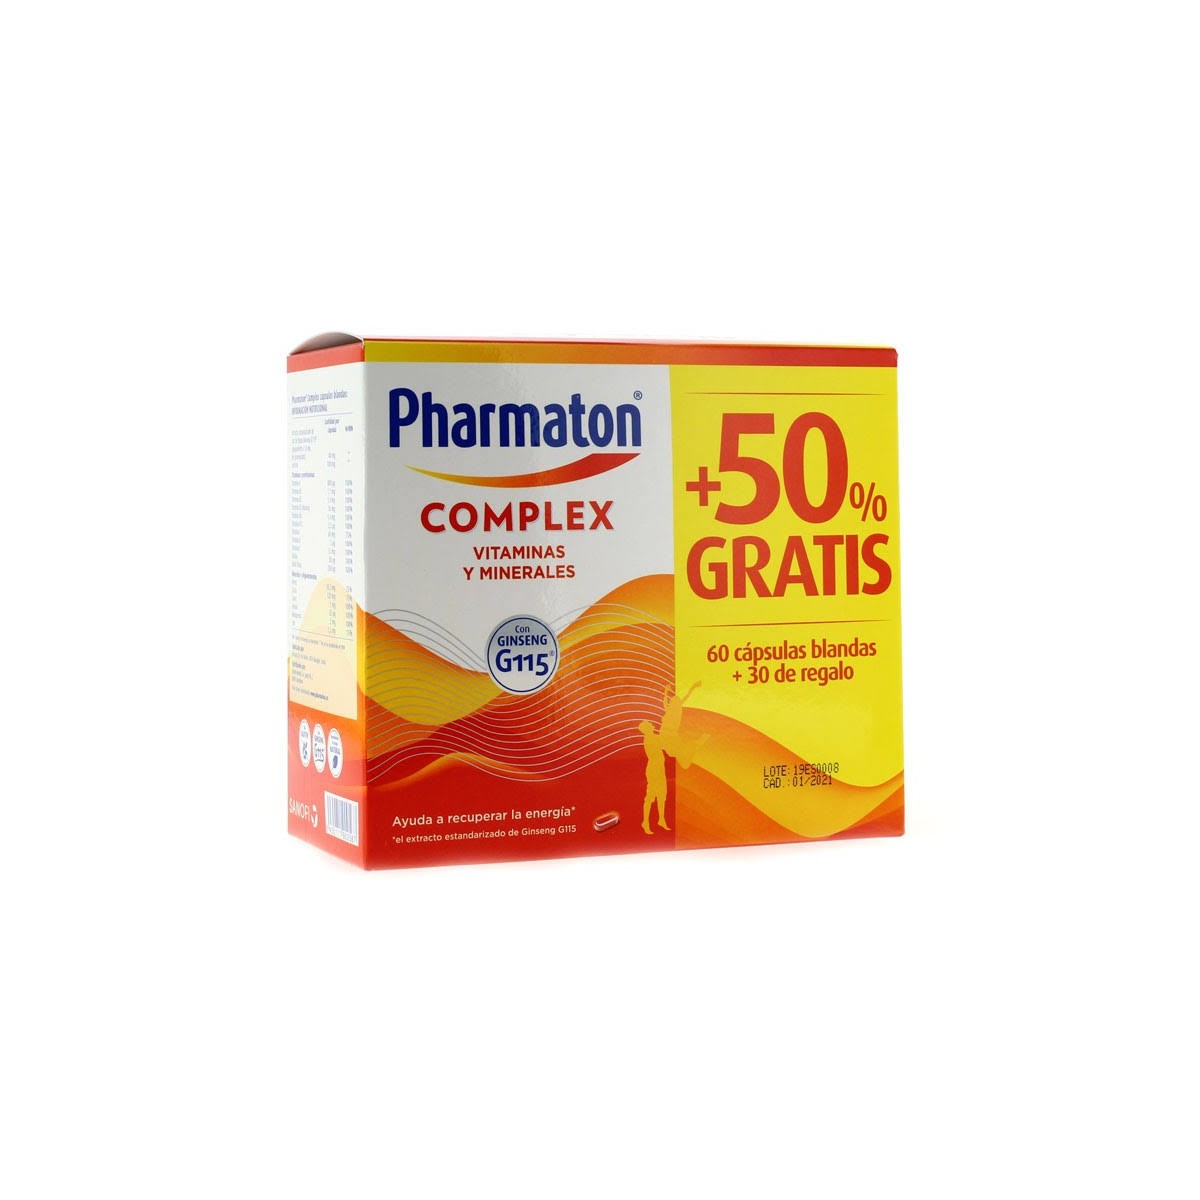 pharmaton complex 60 capsulas